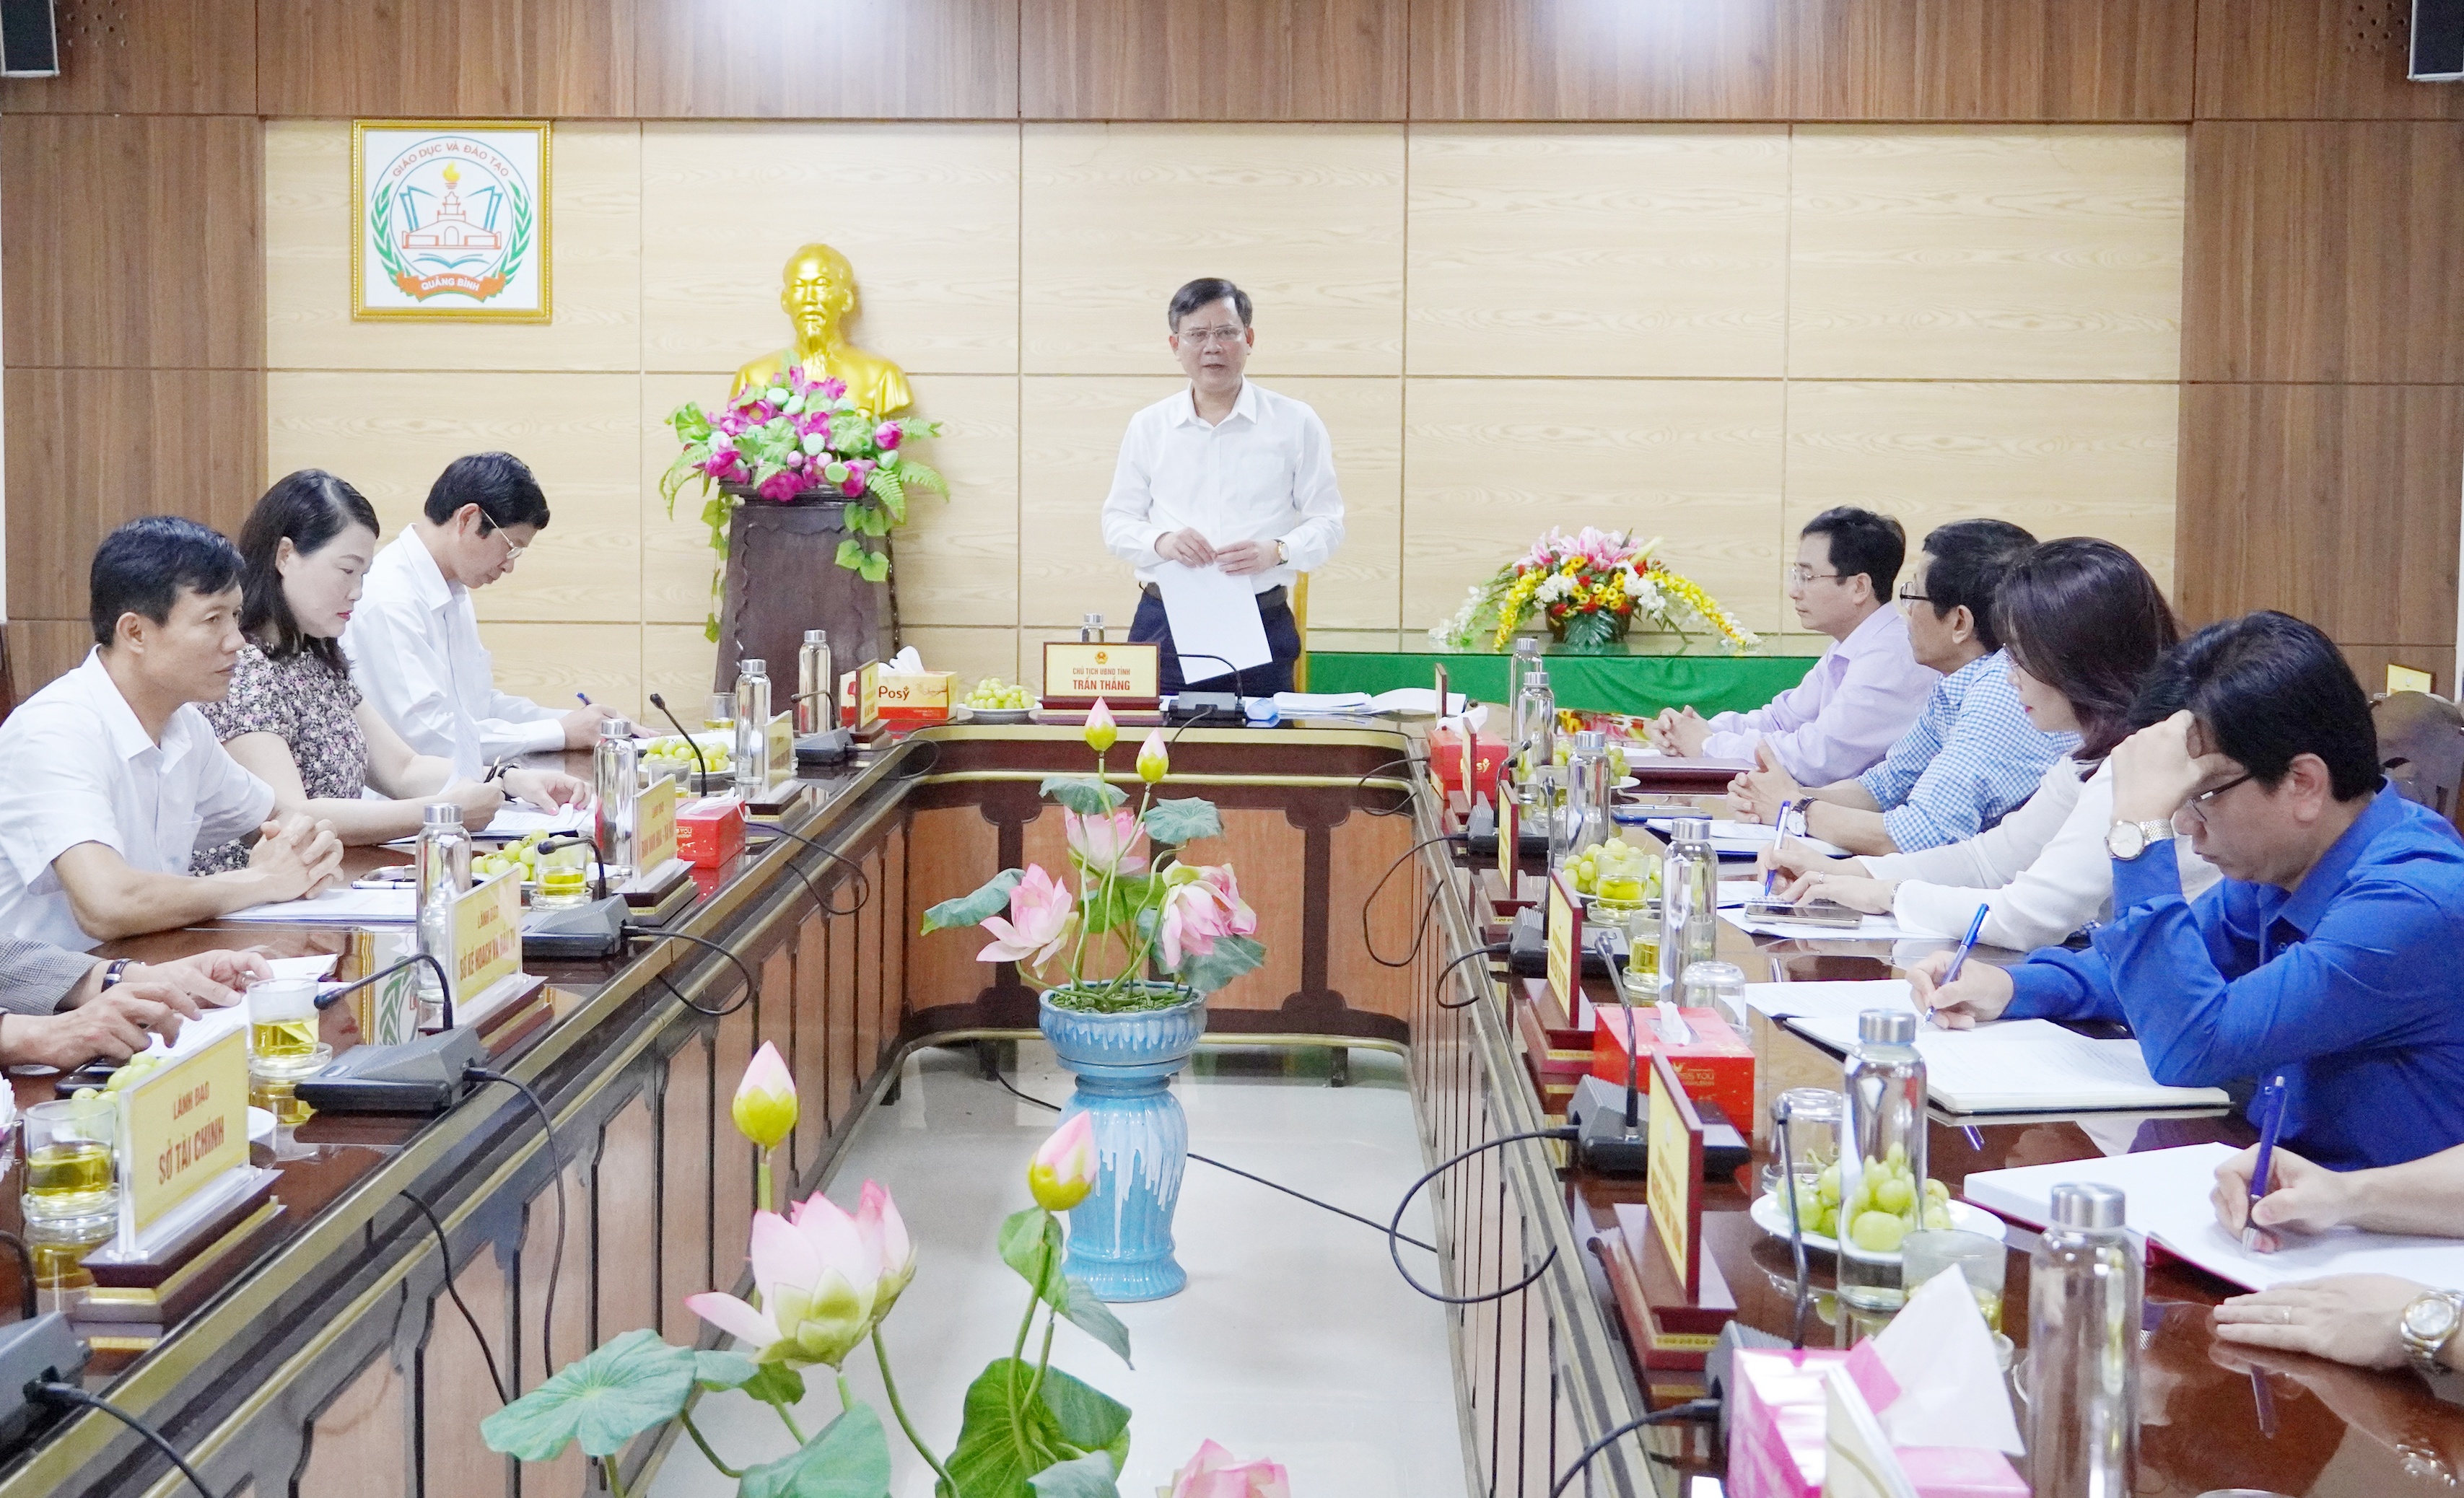 Đồng chí Chủ tịch UBND tỉnh Trần Thắng phát biểu kết luận tại buổi làm việc.